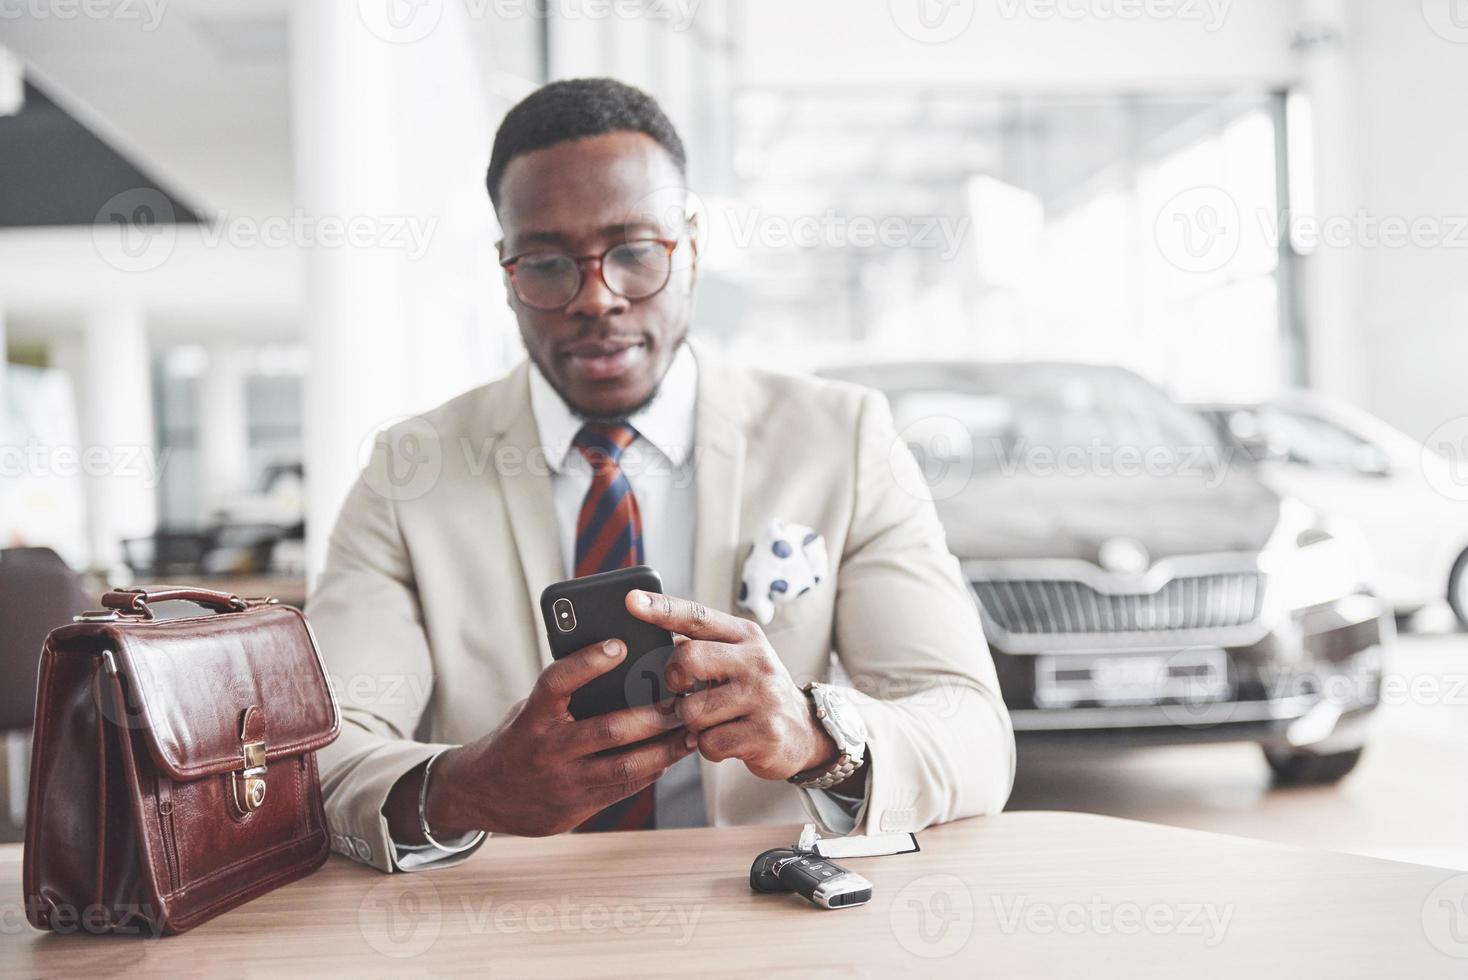 empresário negro e atraente se senta à mesa da concessionária, assina um contrato e compra um carro novo foto